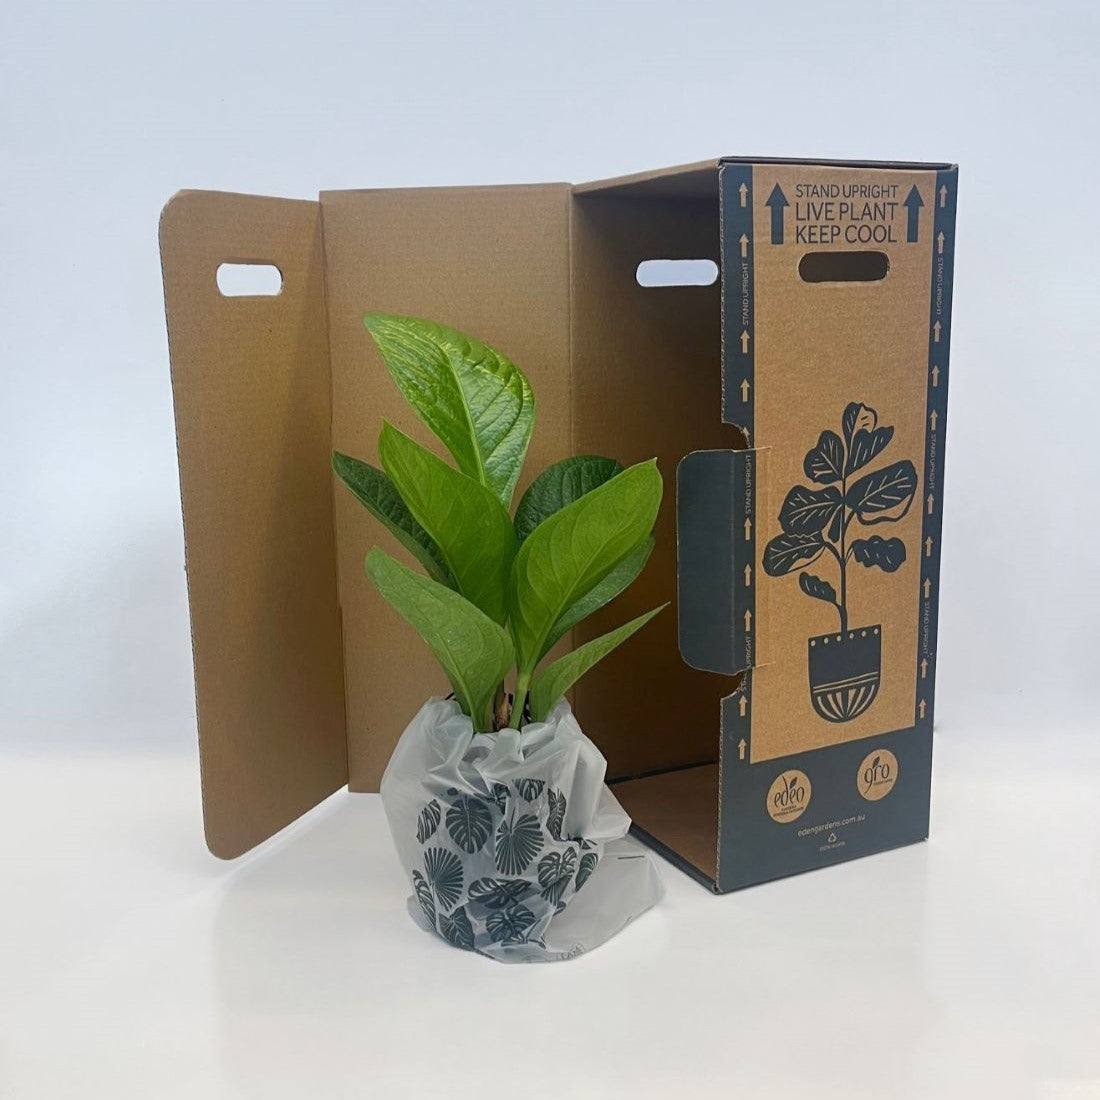 Devils Ivy Pothos (Epipremnum Aureum) Hanging Basket 200mm - Gro Urban Oasis